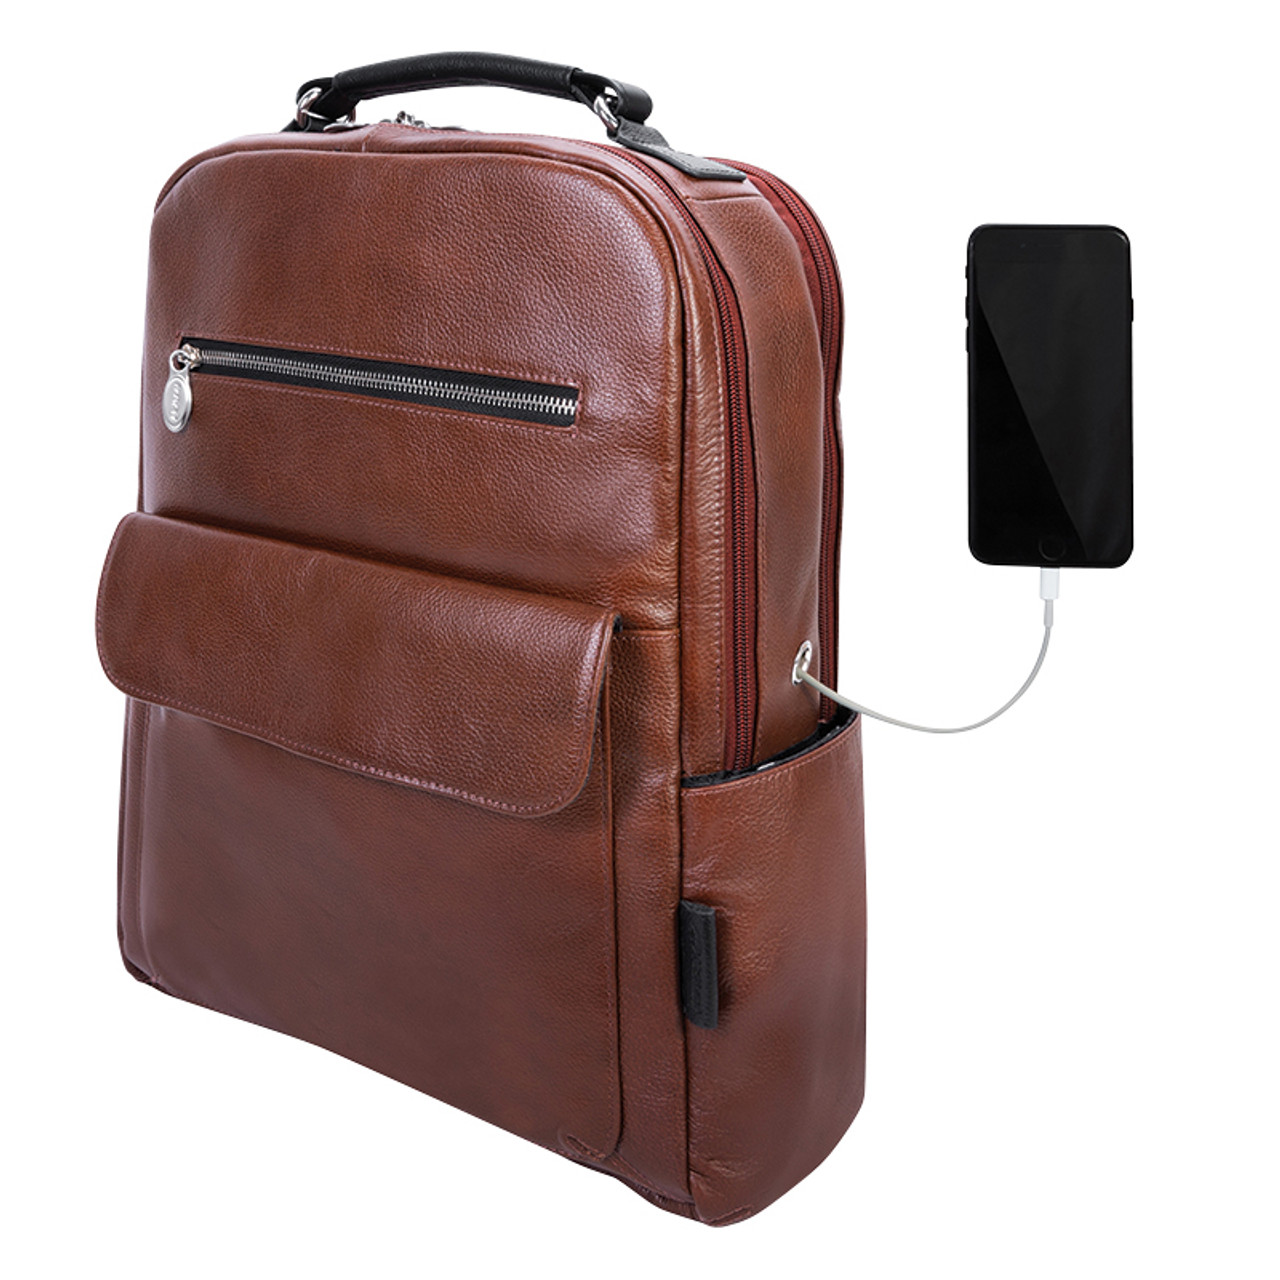 Franklin Covey Attaché Brief Case Laptop Bag  Red leather laptop bag, Leather  laptop bag, Laptop bag